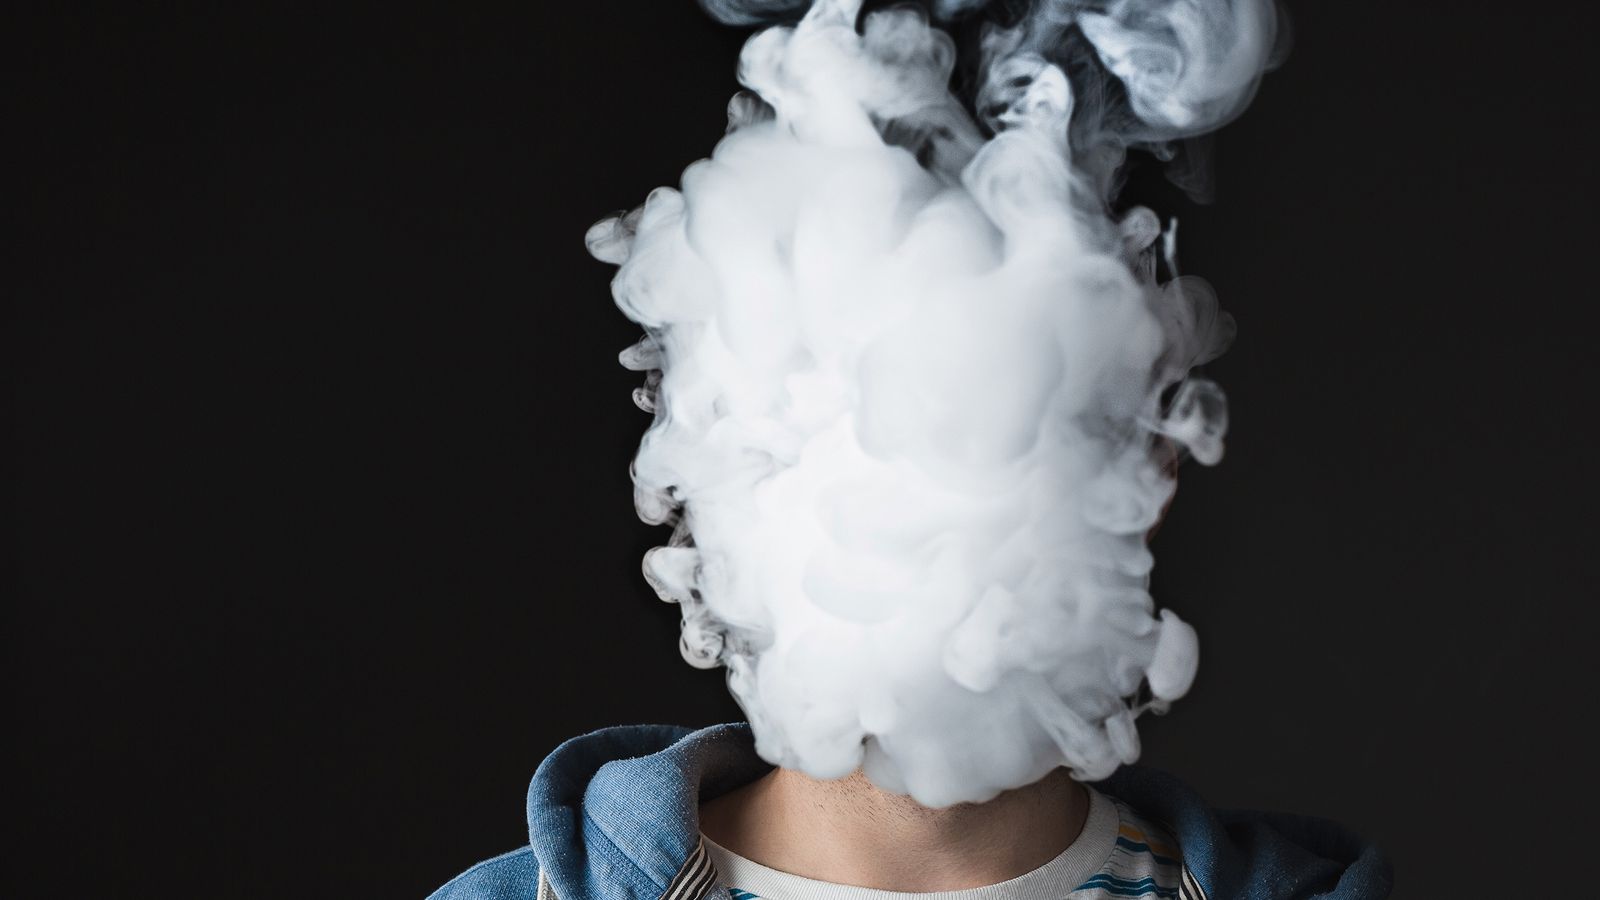 Kopf eines Mannes ist verhüllt durch E-Zigaretten Rauch